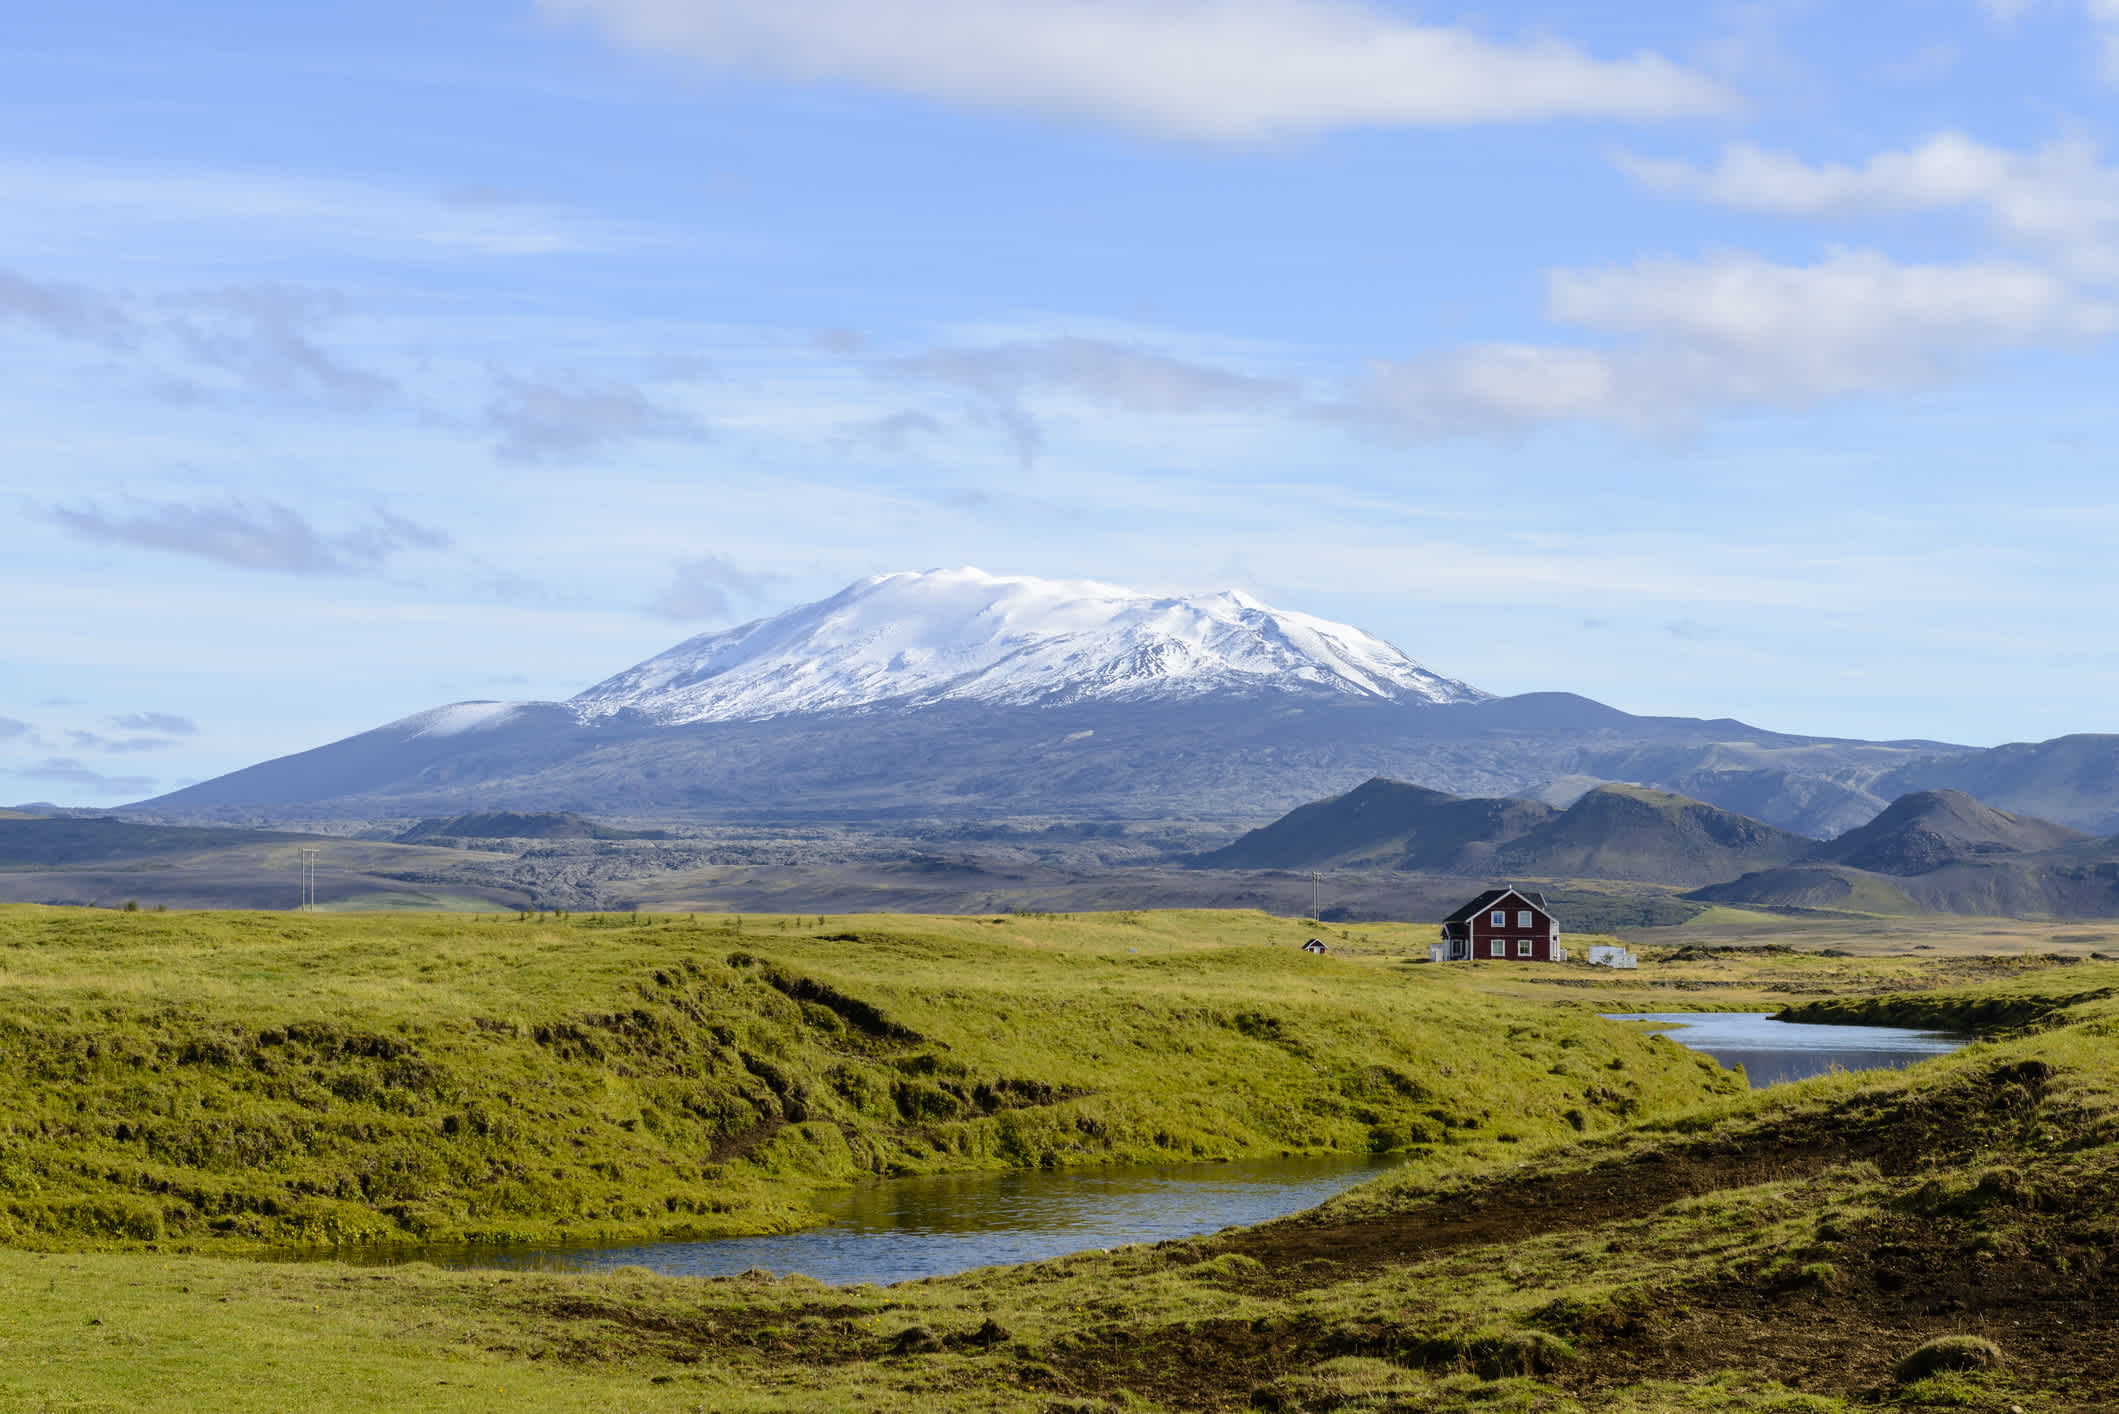 Das Panorama mit dem Vulkan Hekla und einem Haus, Island.

